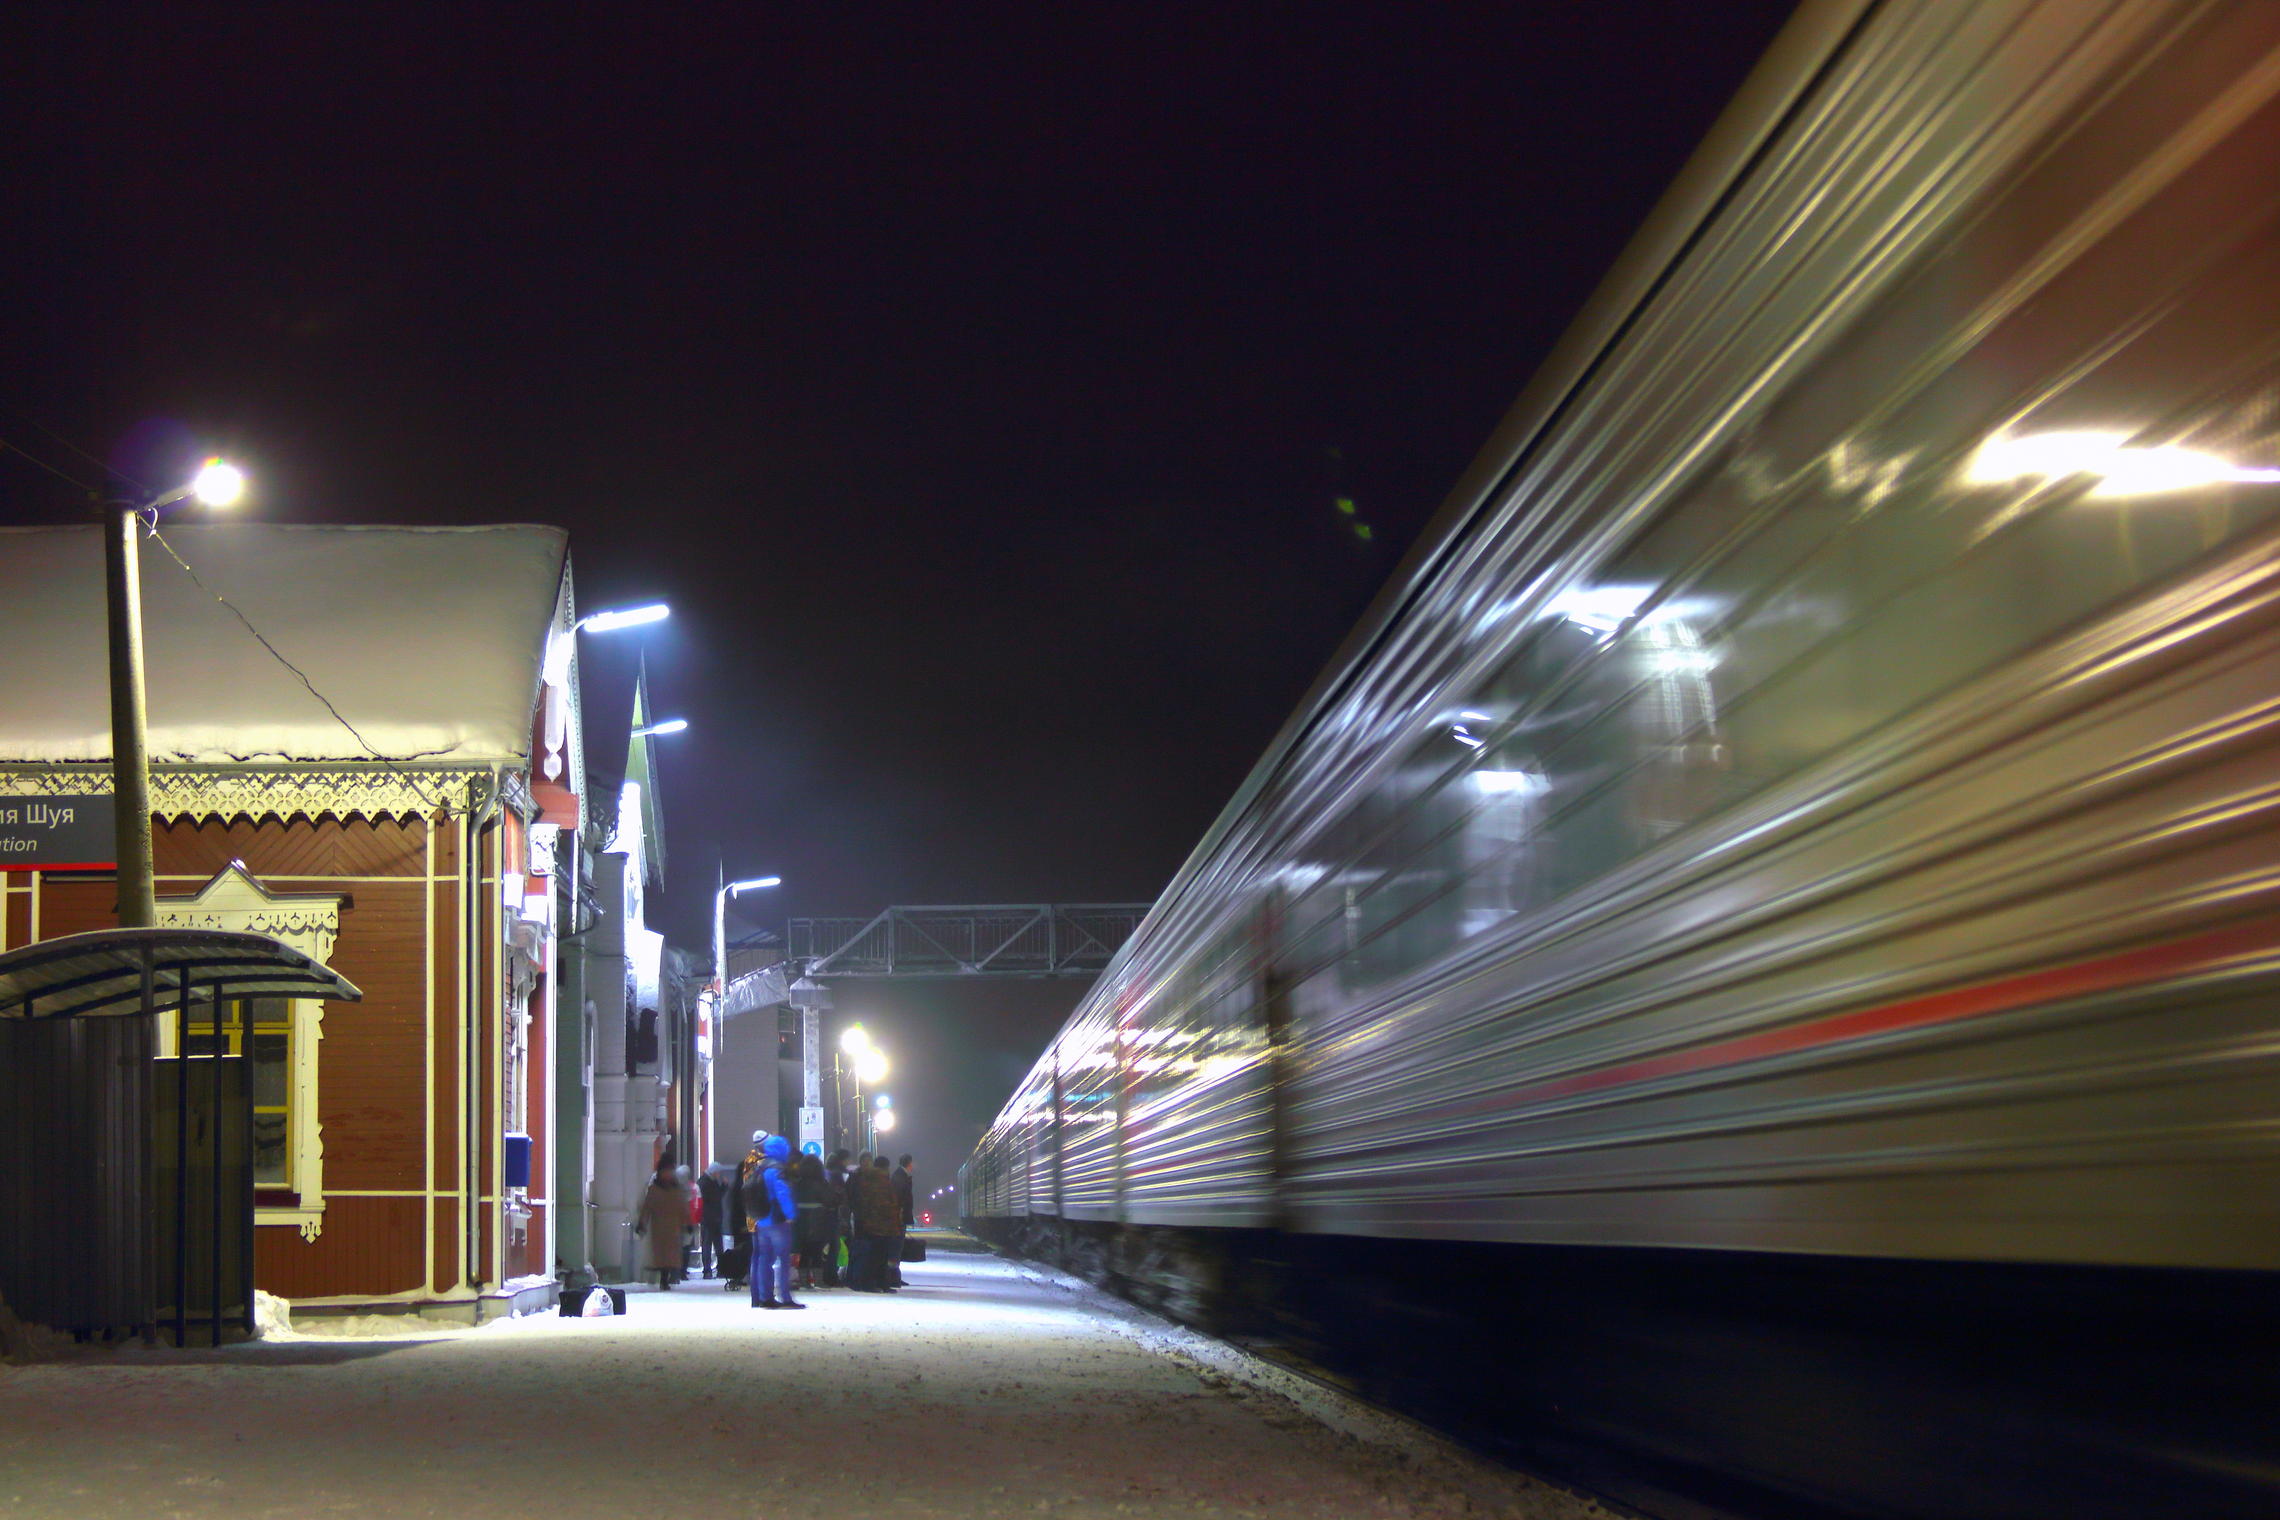  Прибытие поезда из Санкт - Петербурга на станцию Шуя.